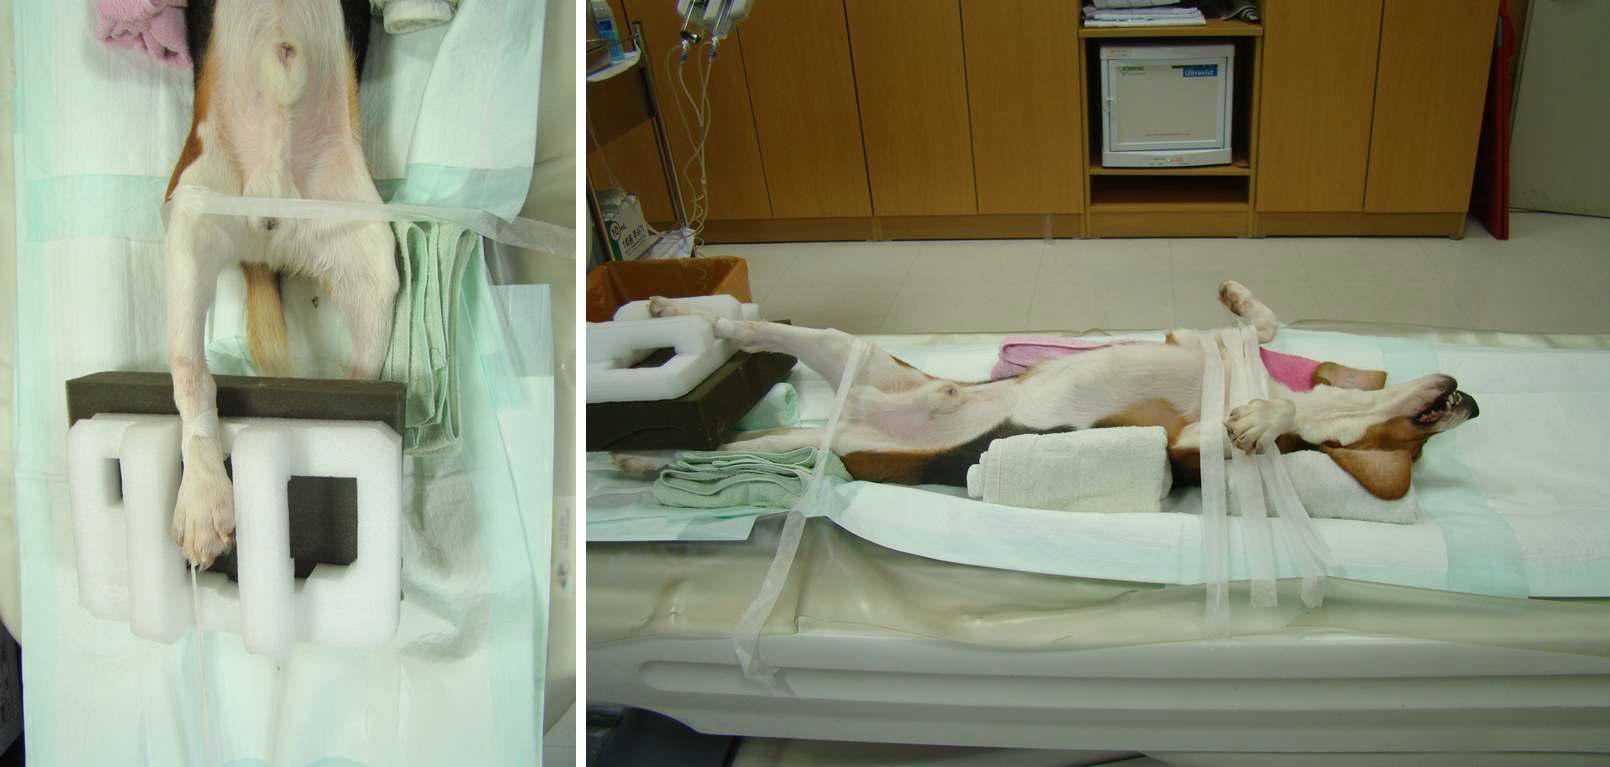 슬개골 수술을 위한 CT 촬영시 무릎관절의 위치와 비글견의 보정